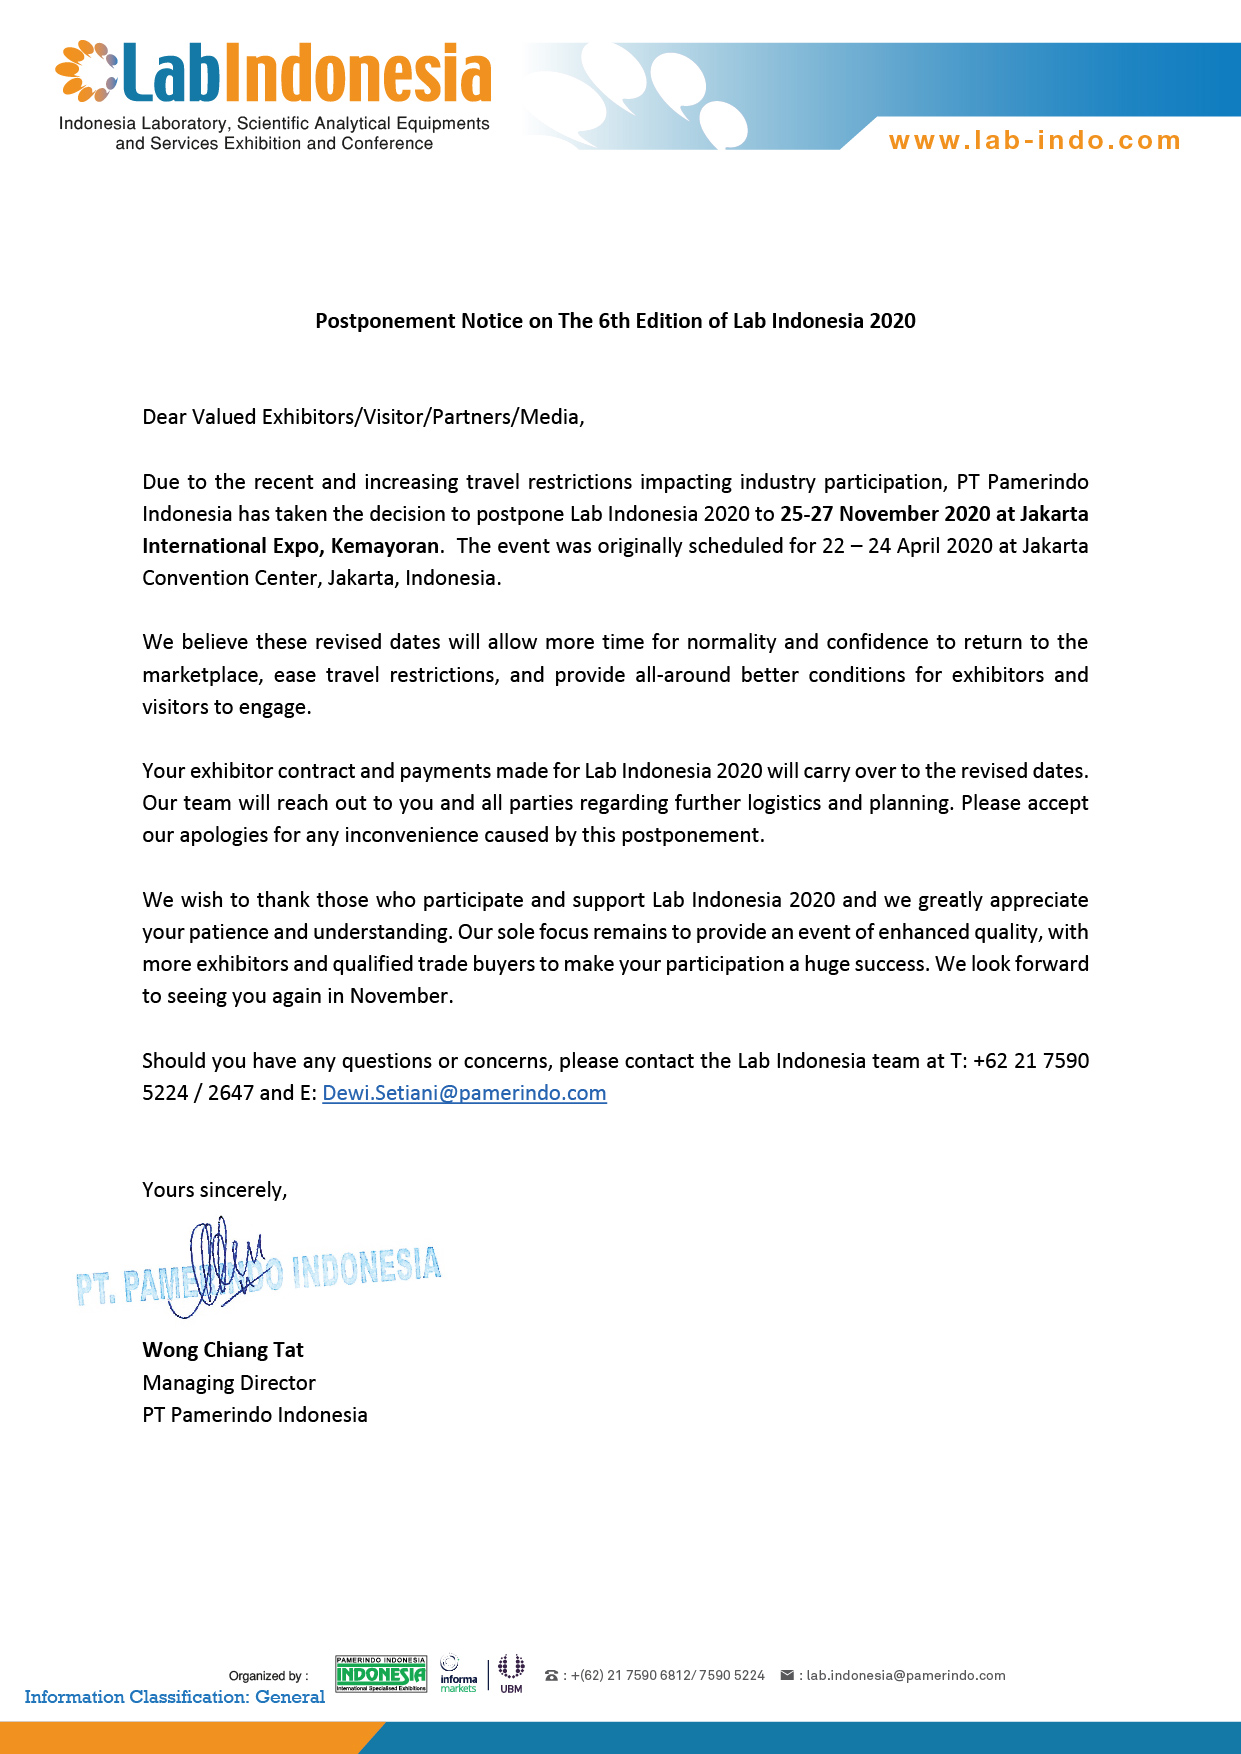 letter-of-postponement-lab-indonesia